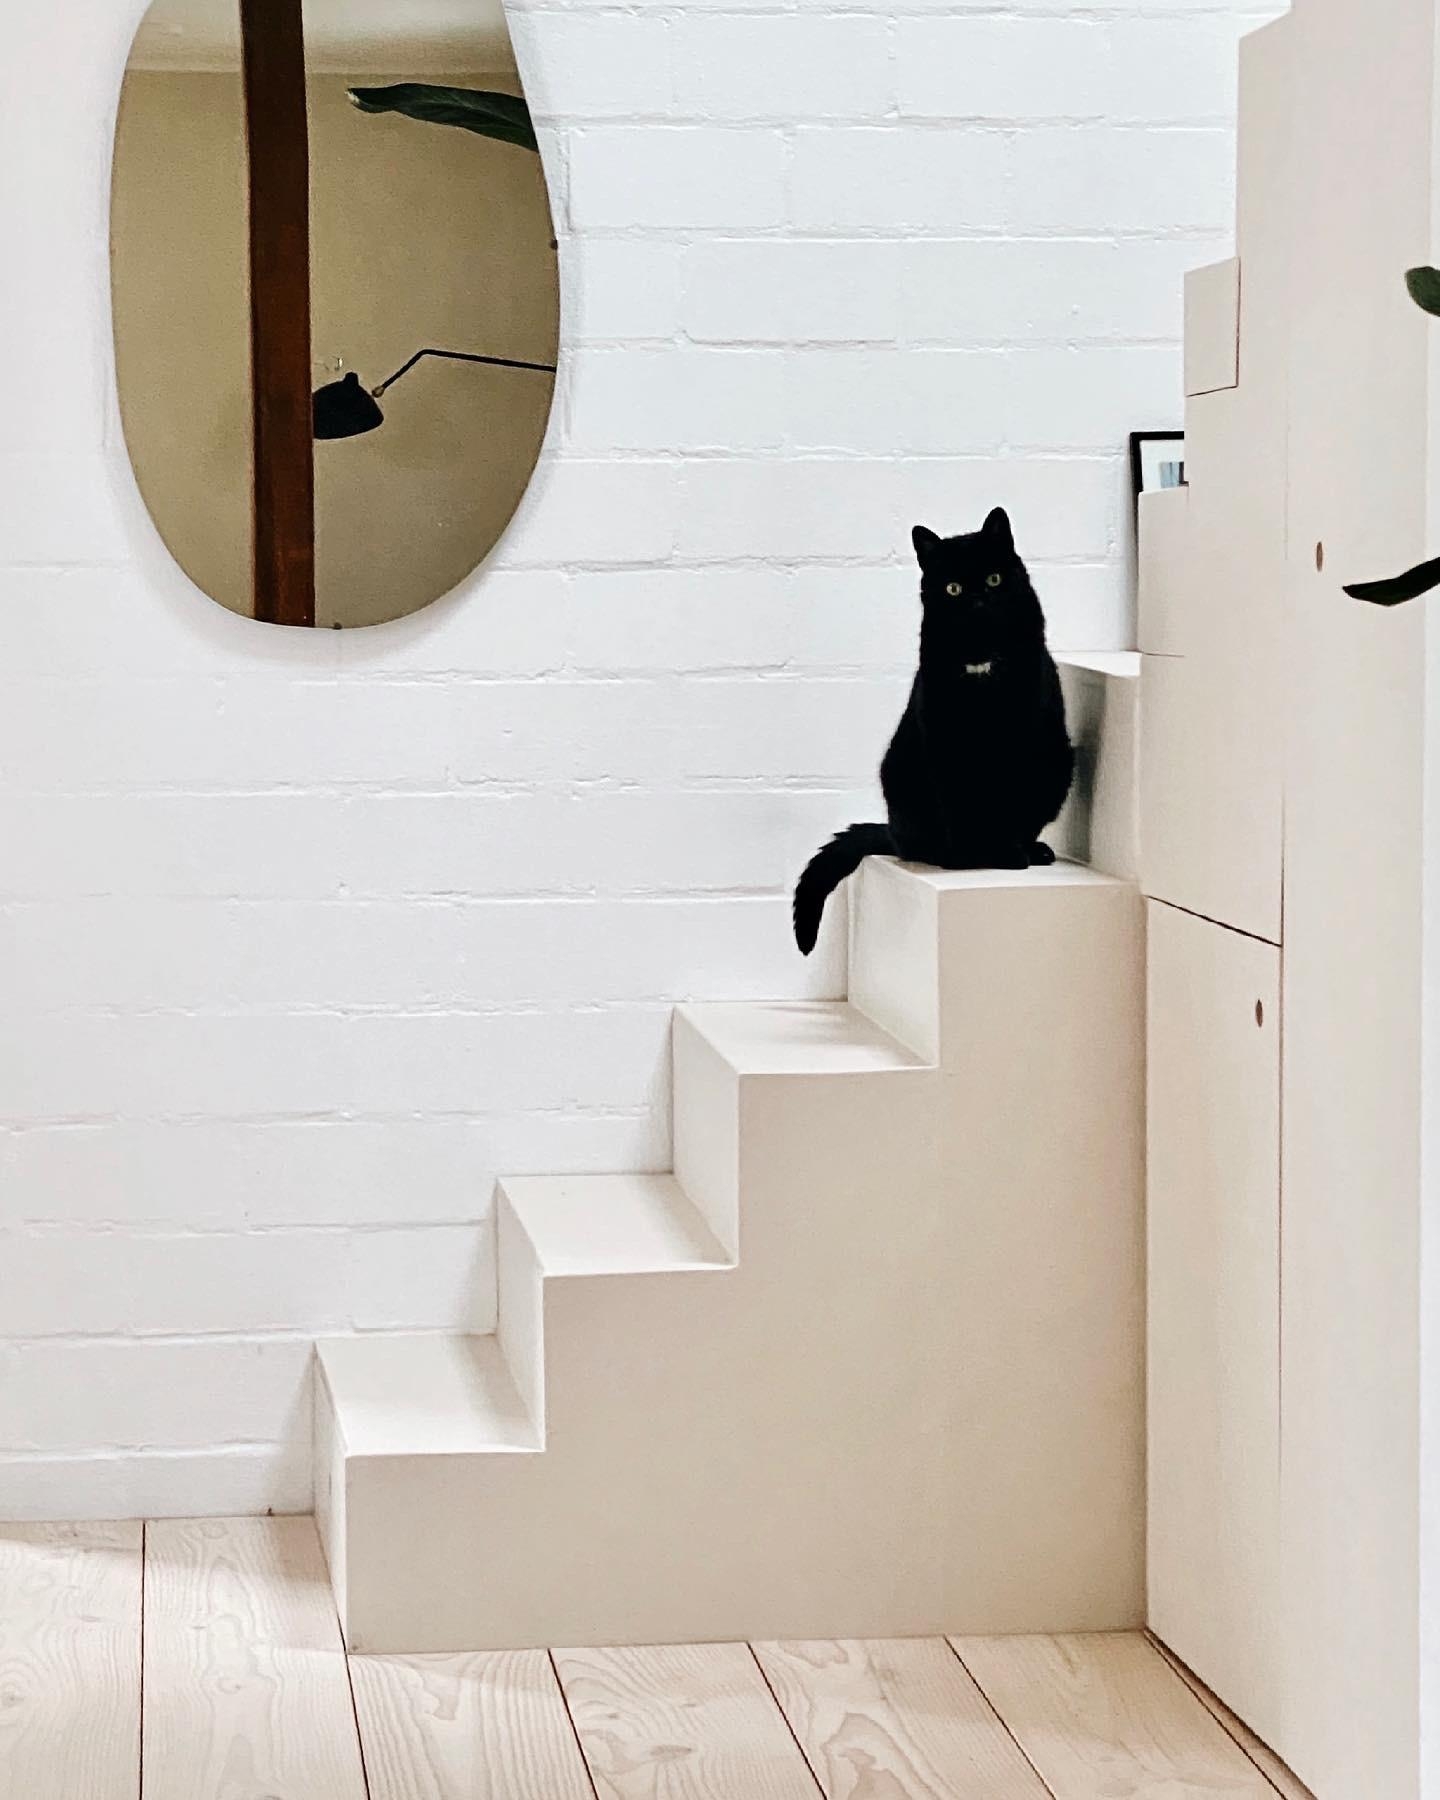 🌚 Wilma findet die selbstgebaute Treppe ziemlich prima. 
#diy #treppenliebe #minimalistisch #skandi